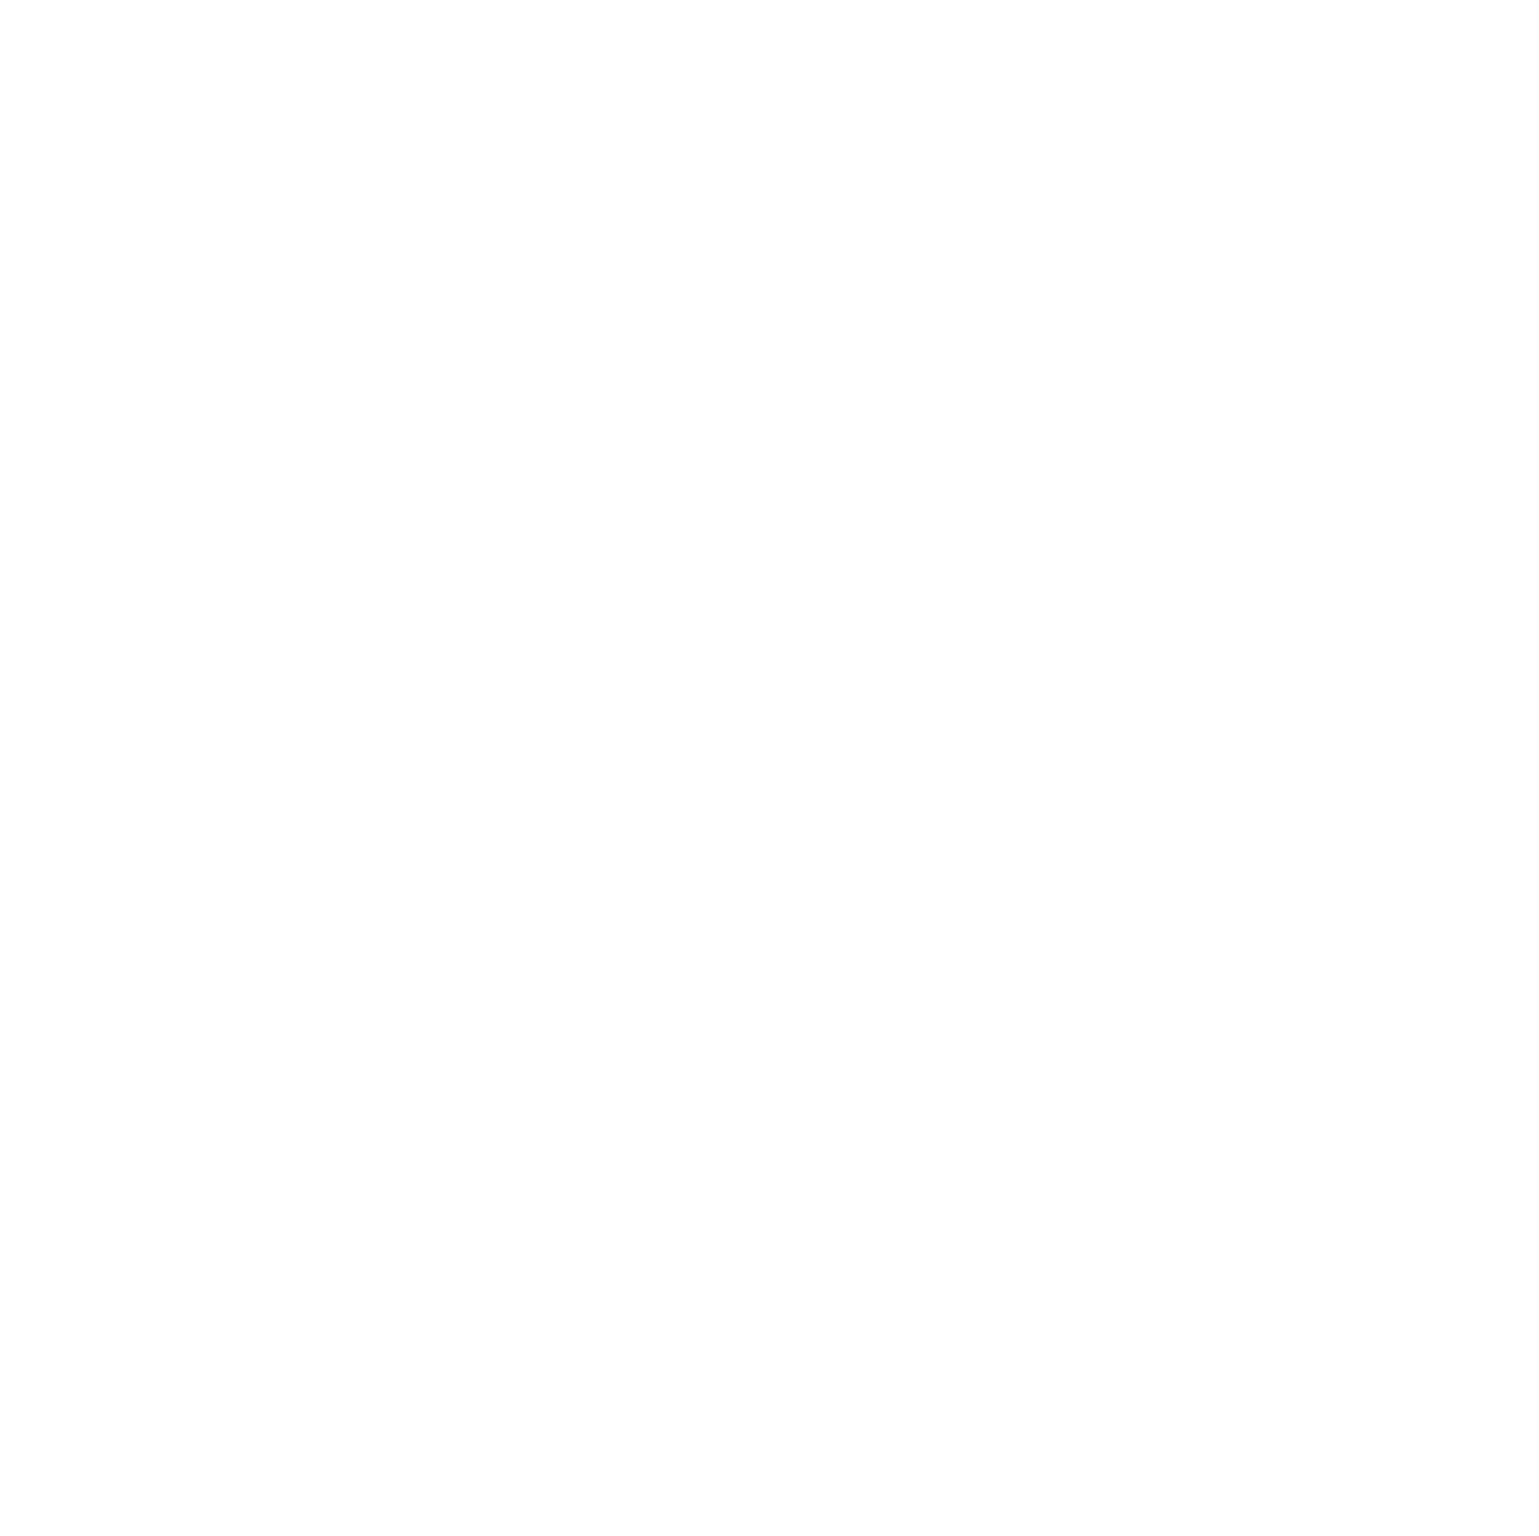 L&T Technology Services logo pour fonds sombres (PNG transparent)